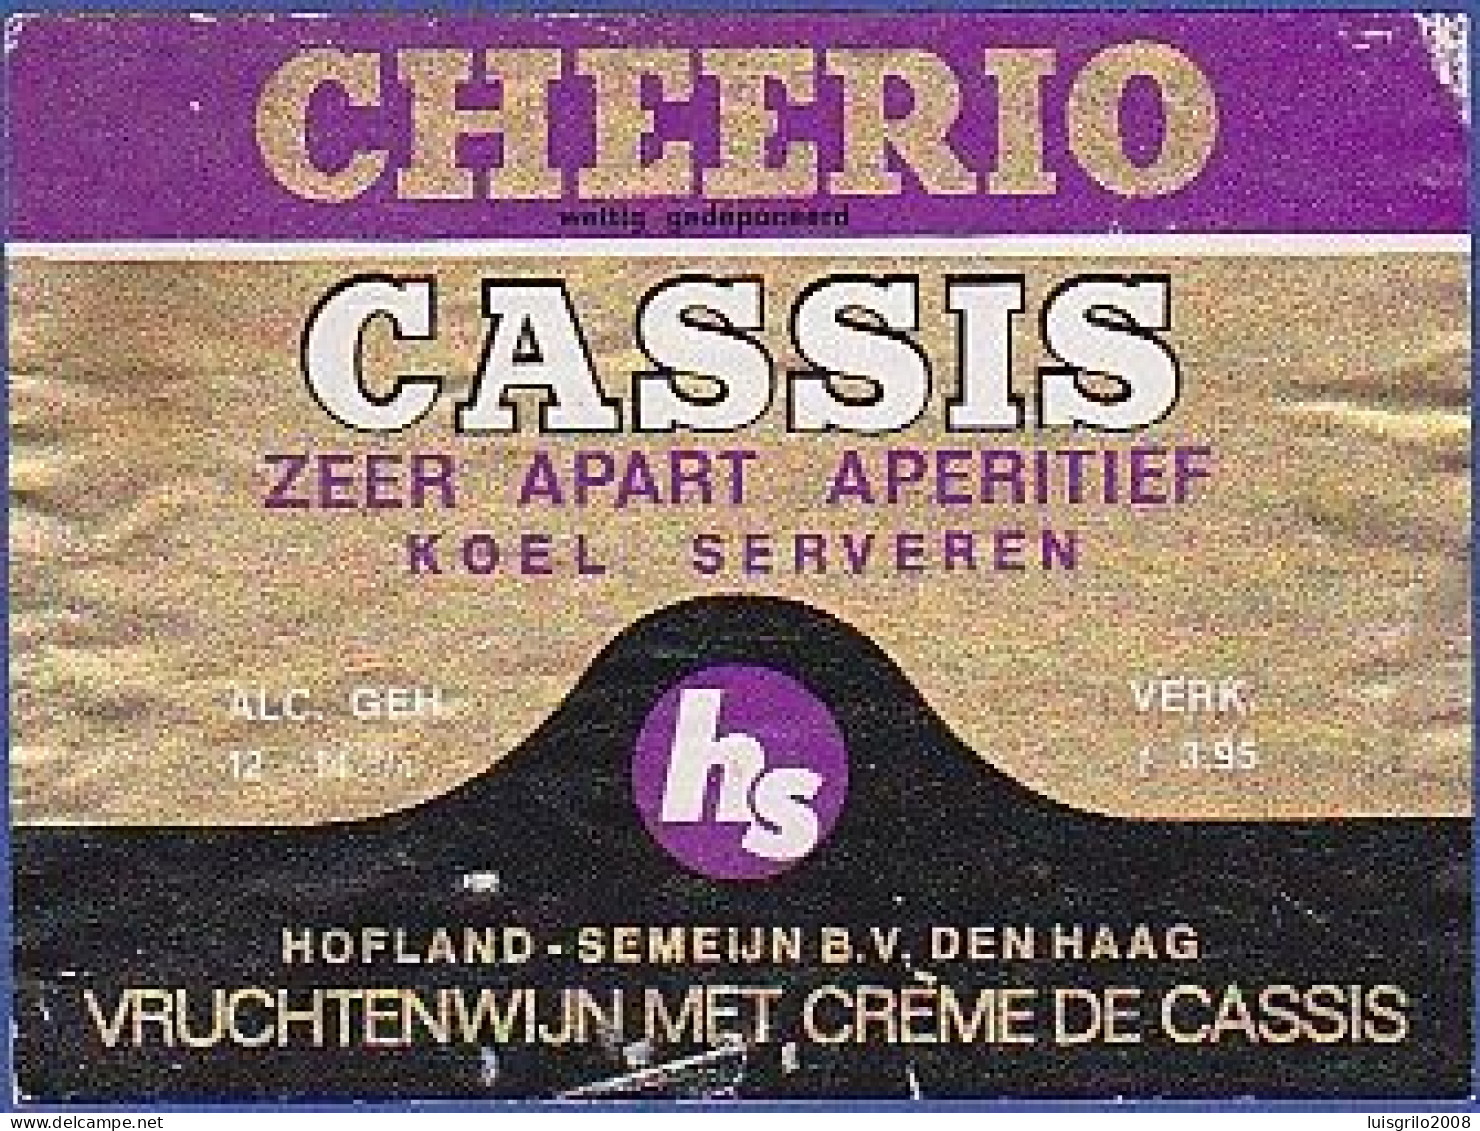 CHEERIO - CASSIS. Zeer Apart Aperitif. Koel Serveren -|- Vruchtenwijn Met Crème De Cassis - Alcools & Spiritueux